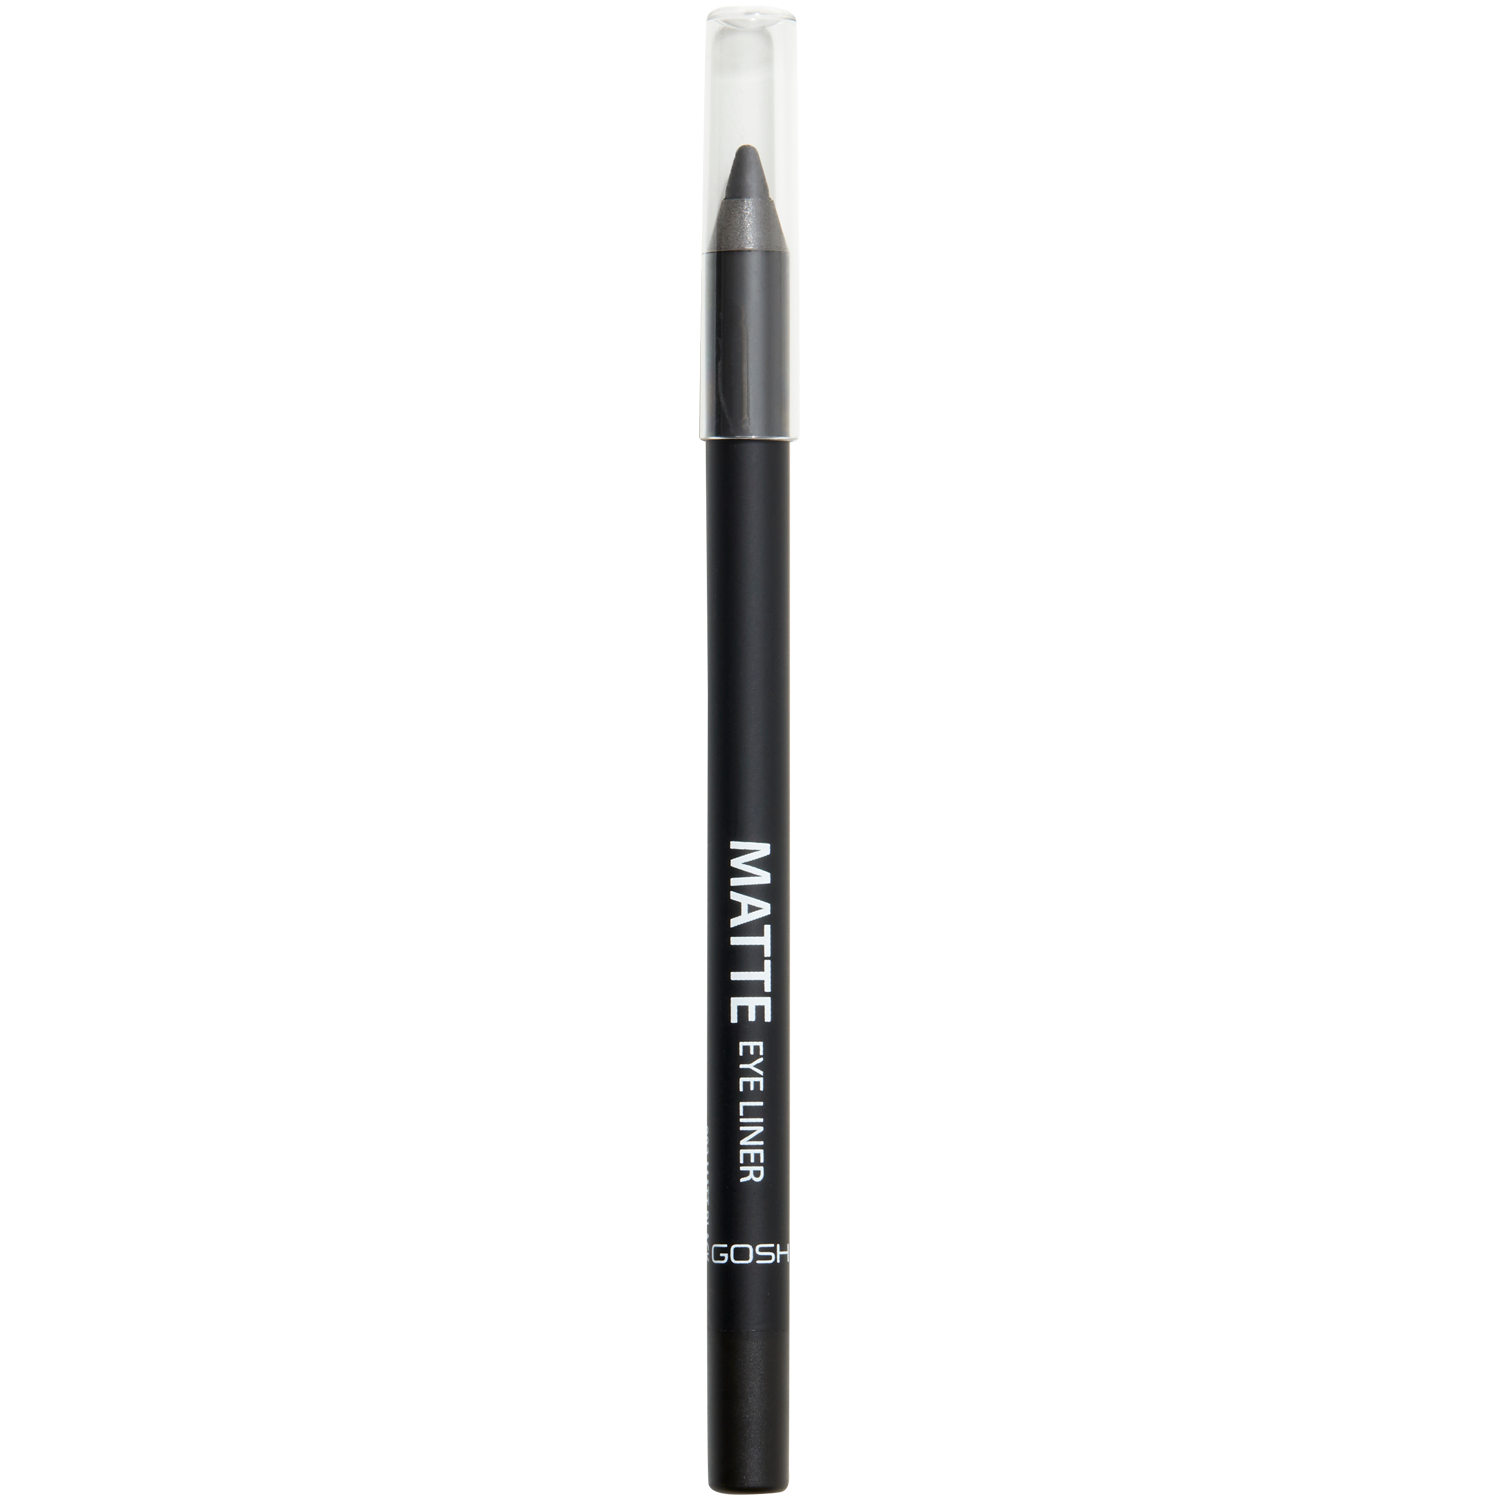 Матовый карандаш для глаз водостойкий 002 матовый черный Gosh Matte, 1,2 гр